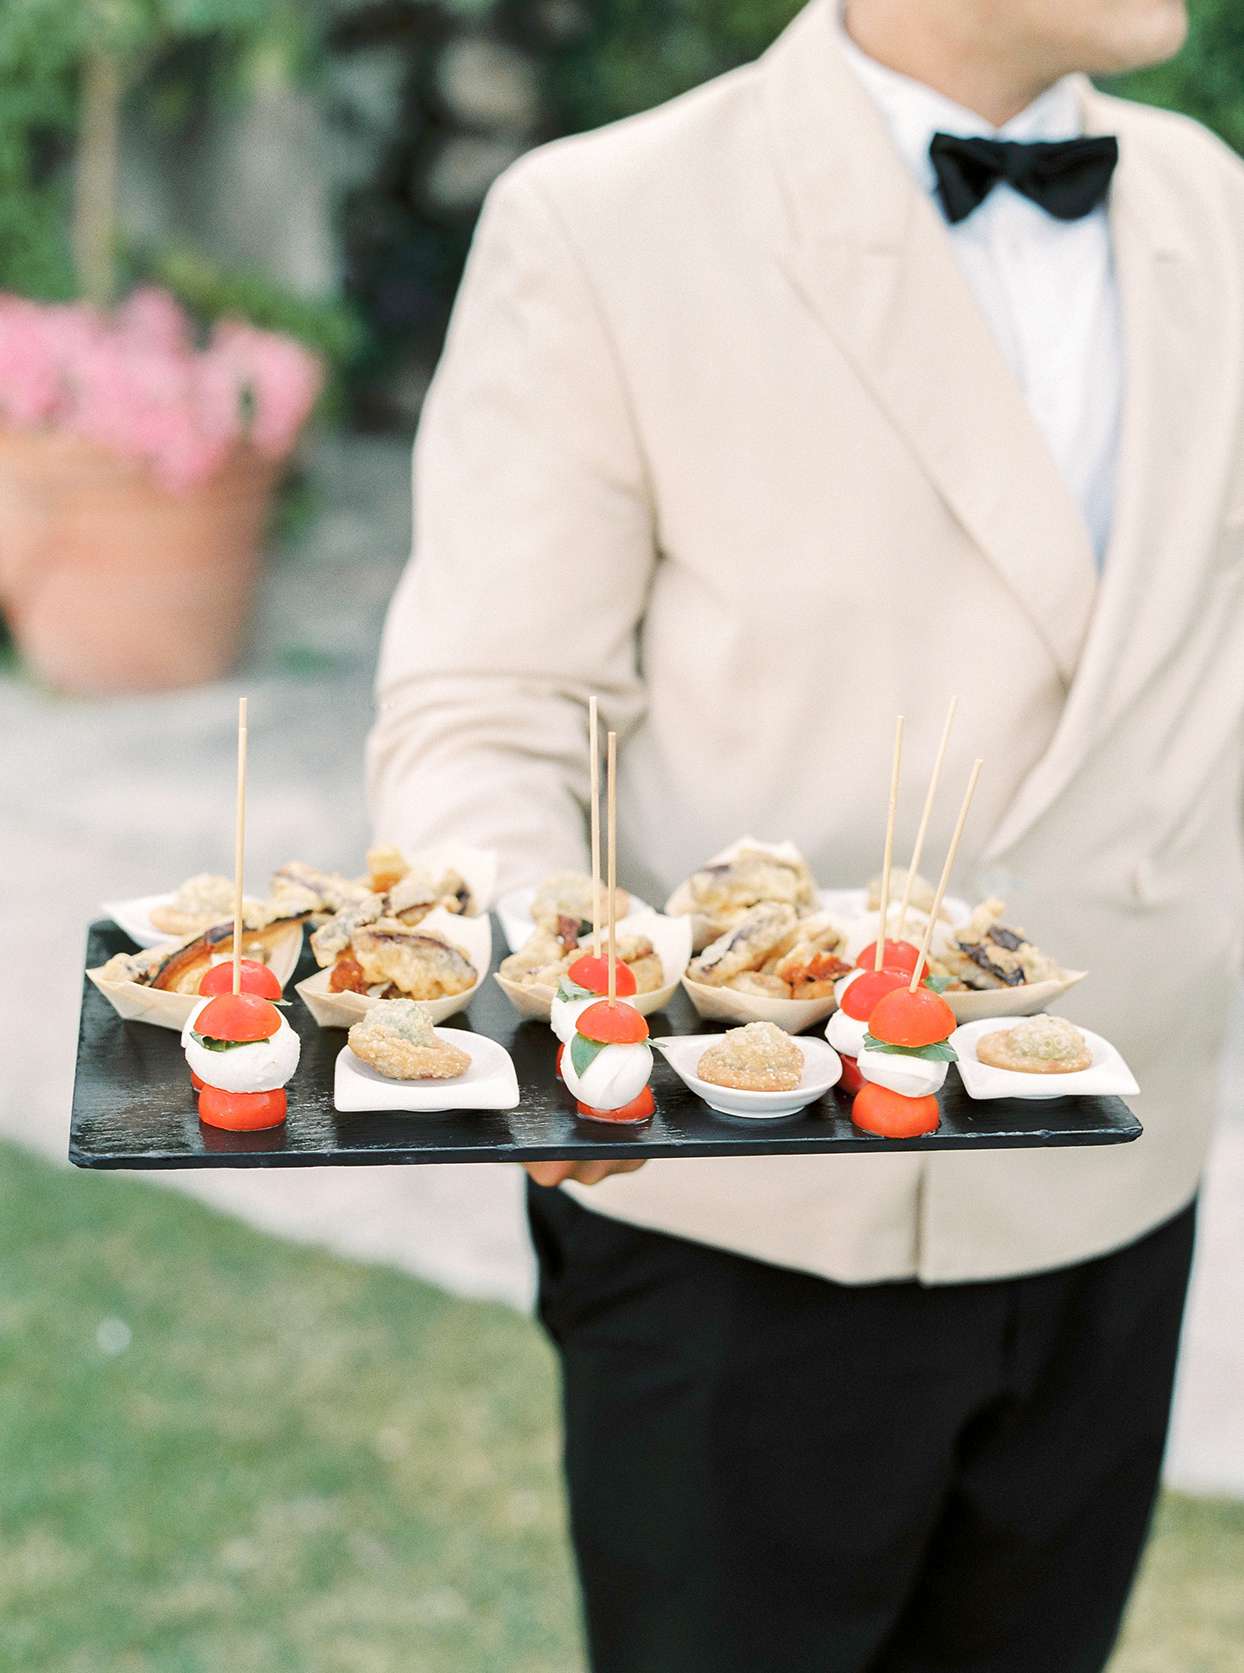 krystyna alexander wedding food on serving tray